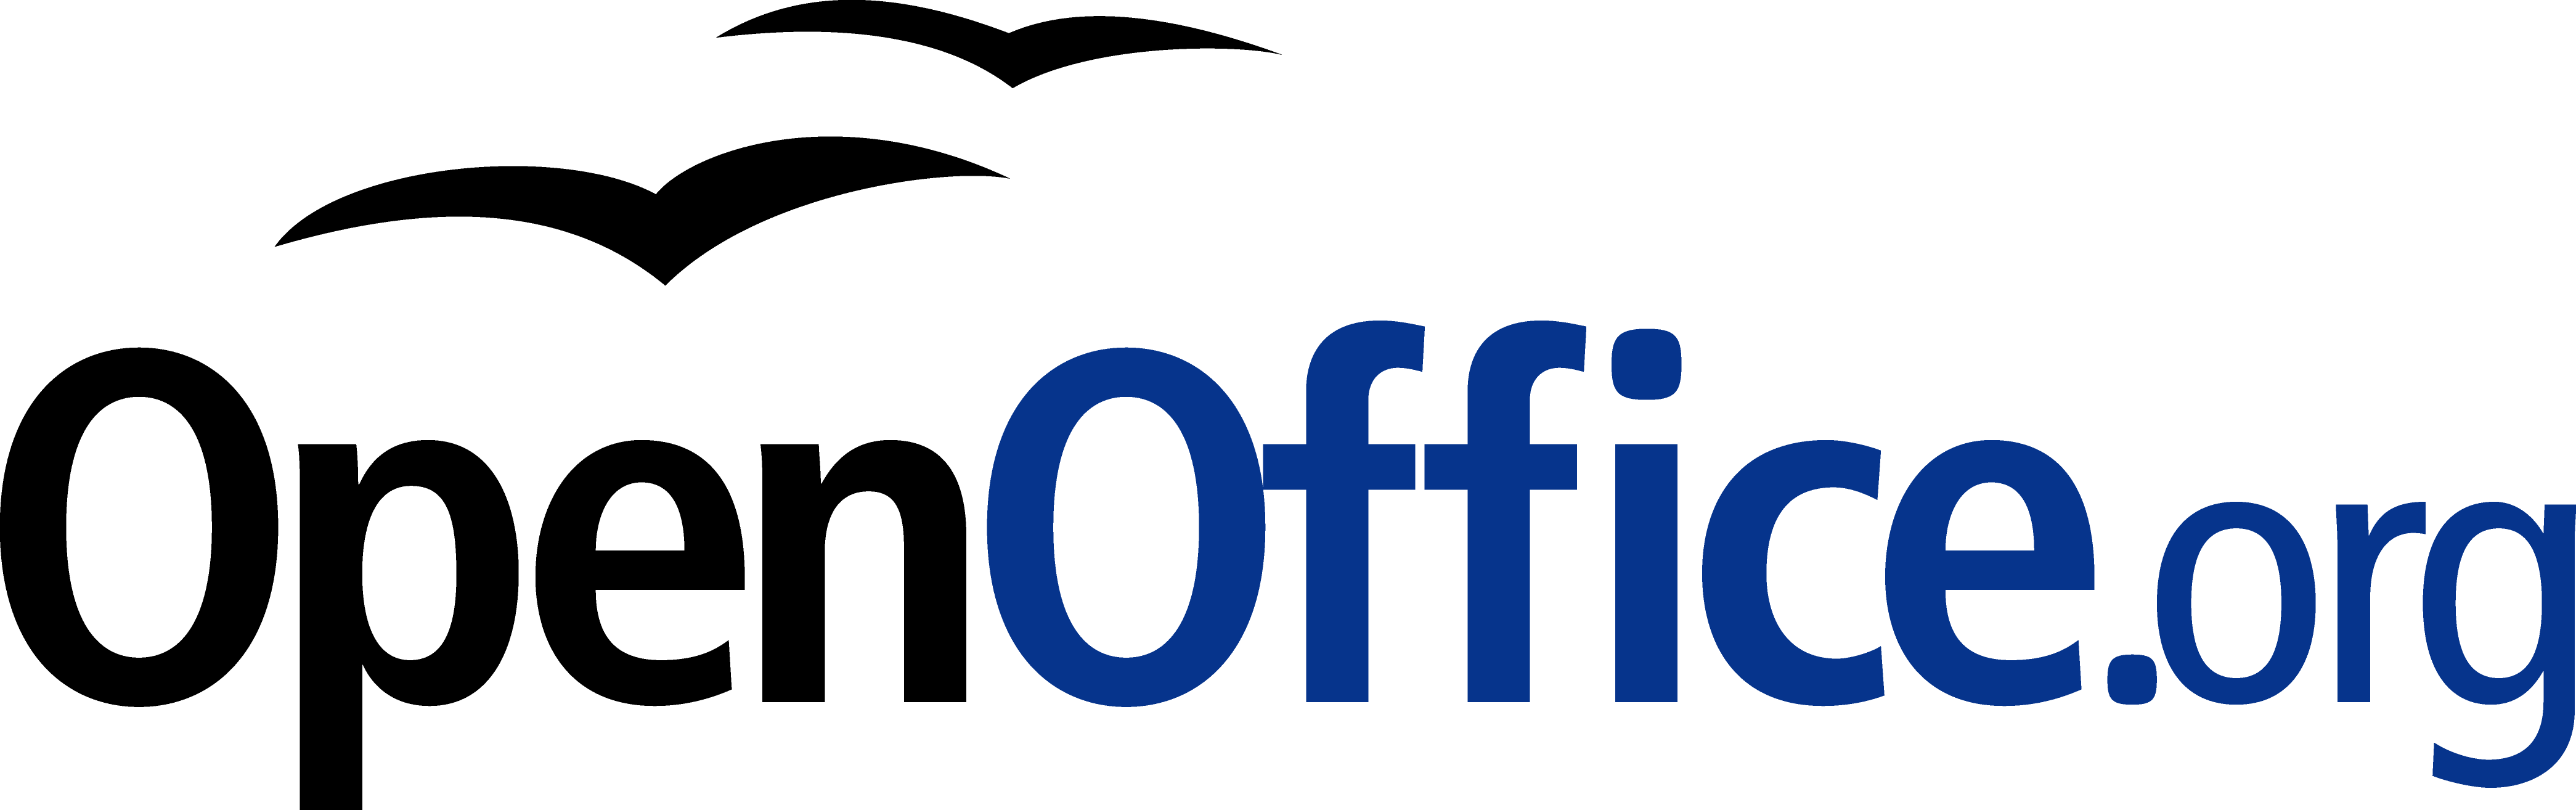 Télécharger gratuit Open Office suite bureautique équivalent à Office de Microsoft